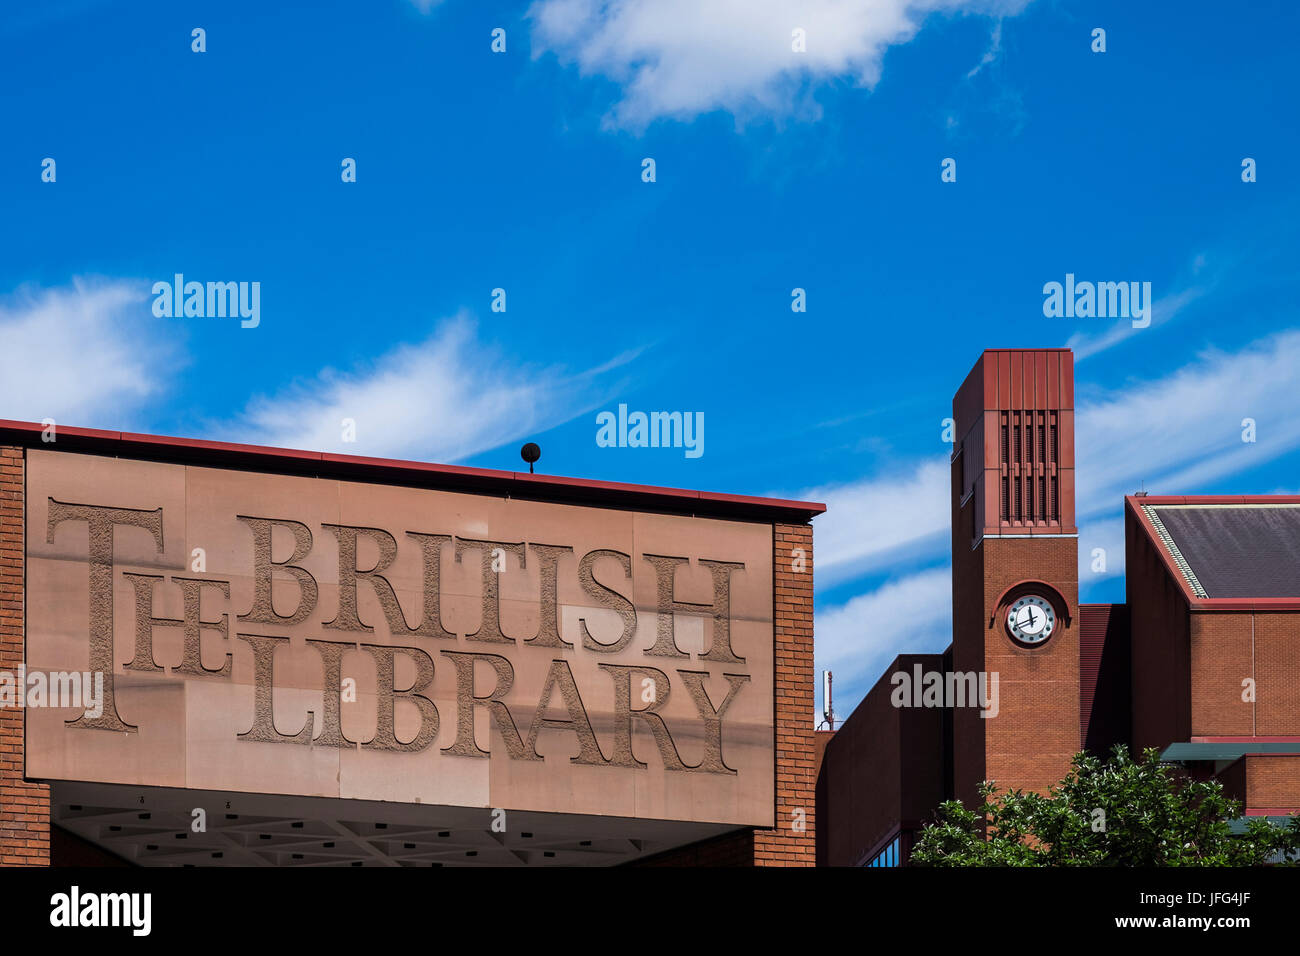 La British Library est la Bibliothèque nationale du Royaume-Uni sur Euston Road, Londres, Angleterre, Royaume-Uni Banque D'Images